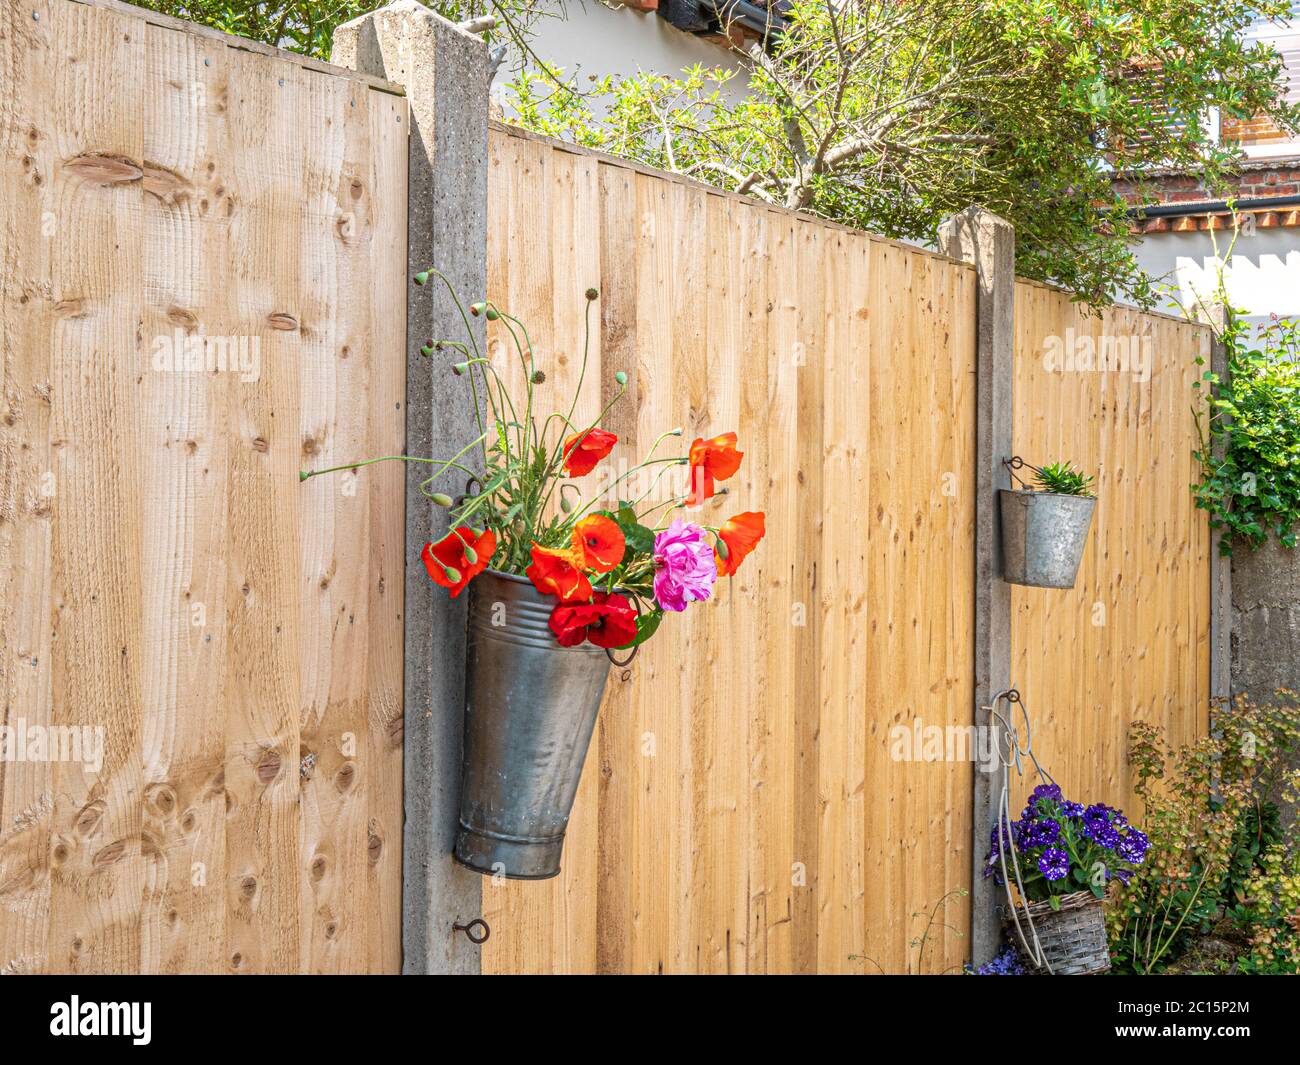 Une clôture solide entre les propriétés voisines, avec des panneaux de bois fendus entre les poteaux en béton et les contenants de fleurs fixés. Angleterre, Royaume-Uni. Banque D'Images